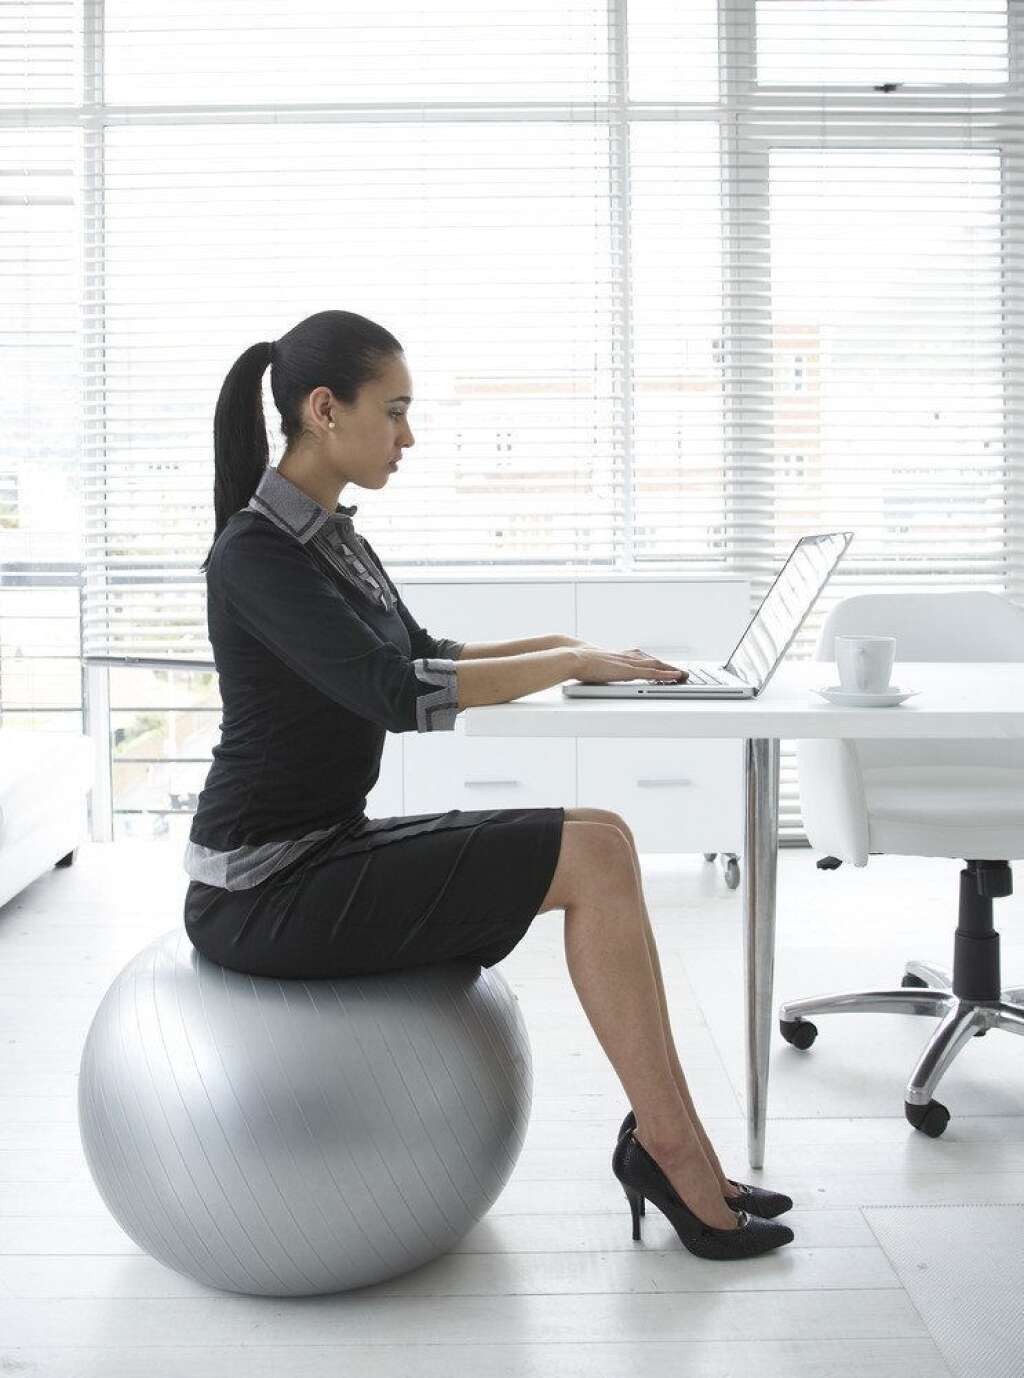 La chaise "boule de yoga" - Il est essentiel au bureau d'être bien assis. Nul besoin d'acheter une nouvelle chaise. Prenez avec vous votre ballon de yoga et asseyez vous dessus face à votre bureau. Vous aurez le dos droit, les bras tendus à bonne distance du clavier et la tête non inclinée.